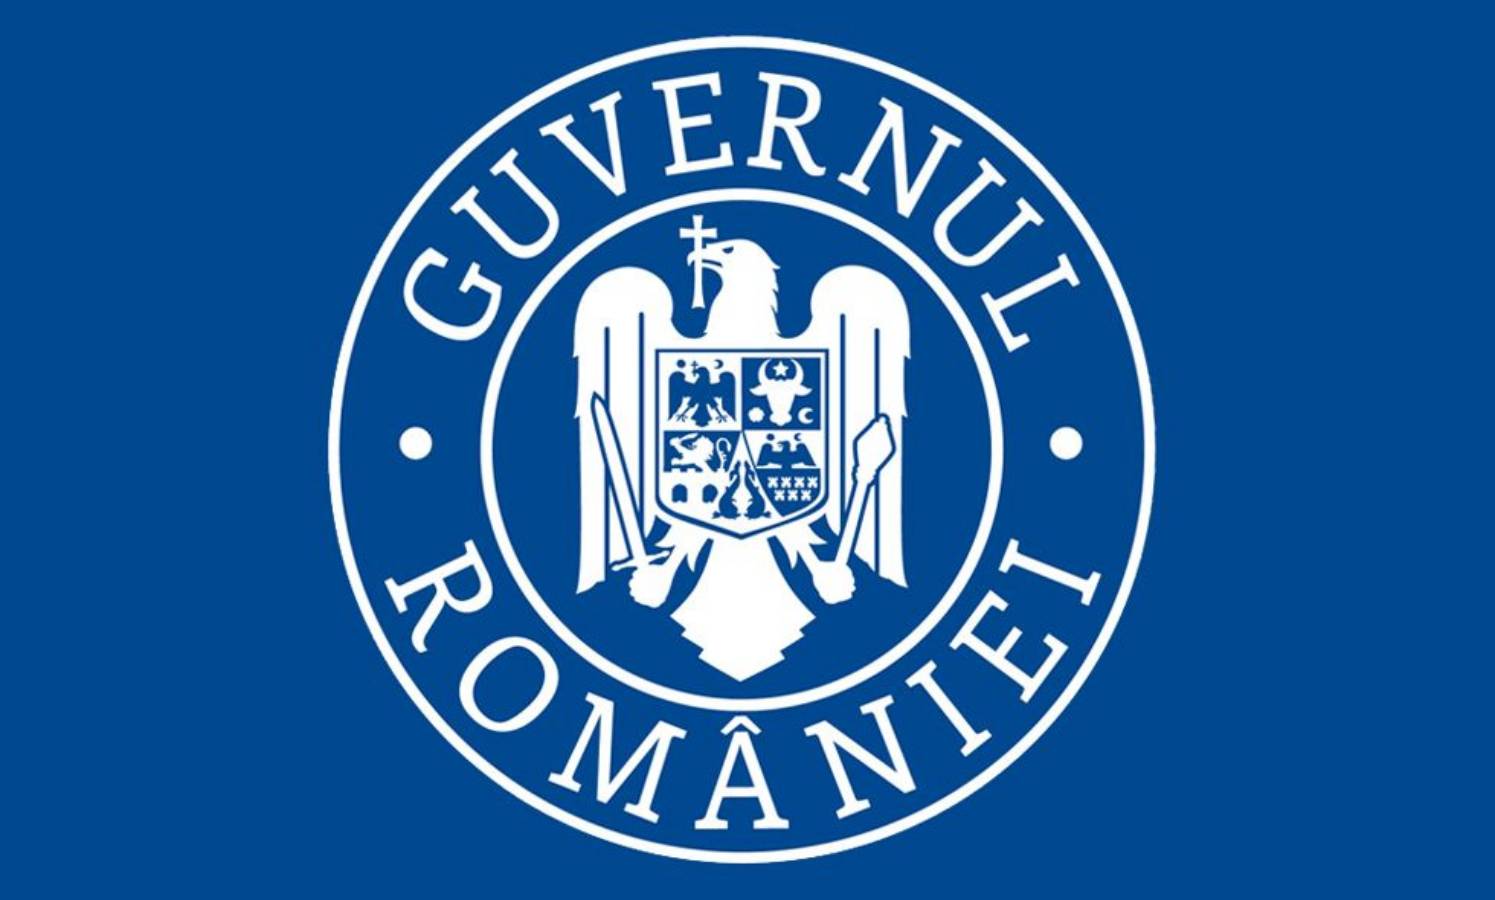 De Roemeense regering heeft gebruikte doses van het coronavirusvaccin ontvangen